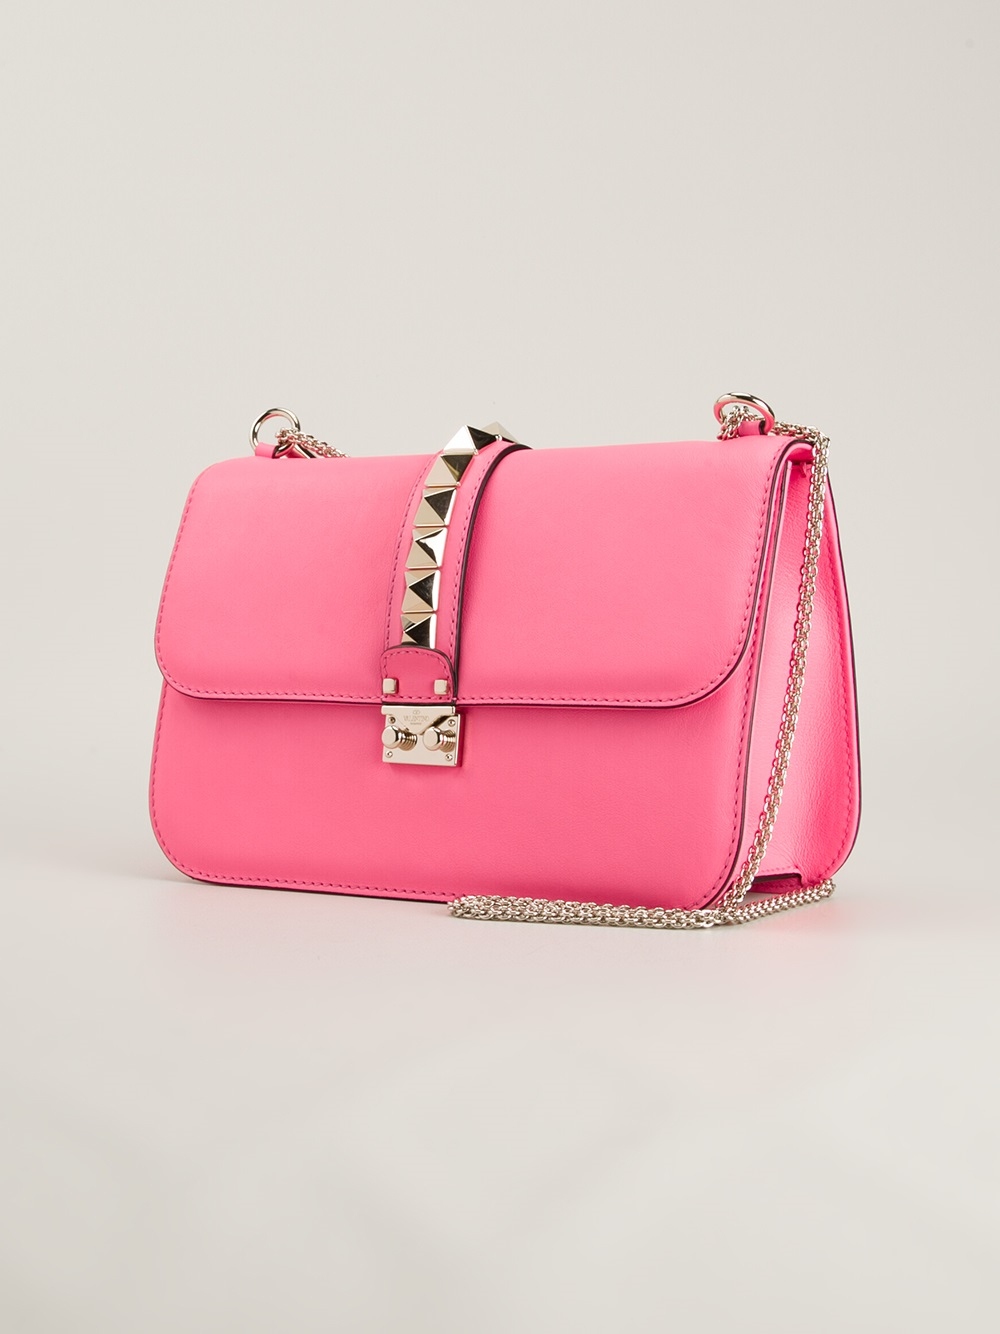 Valentino Large Rockstud Shoulder Bag in Pink - Lyst